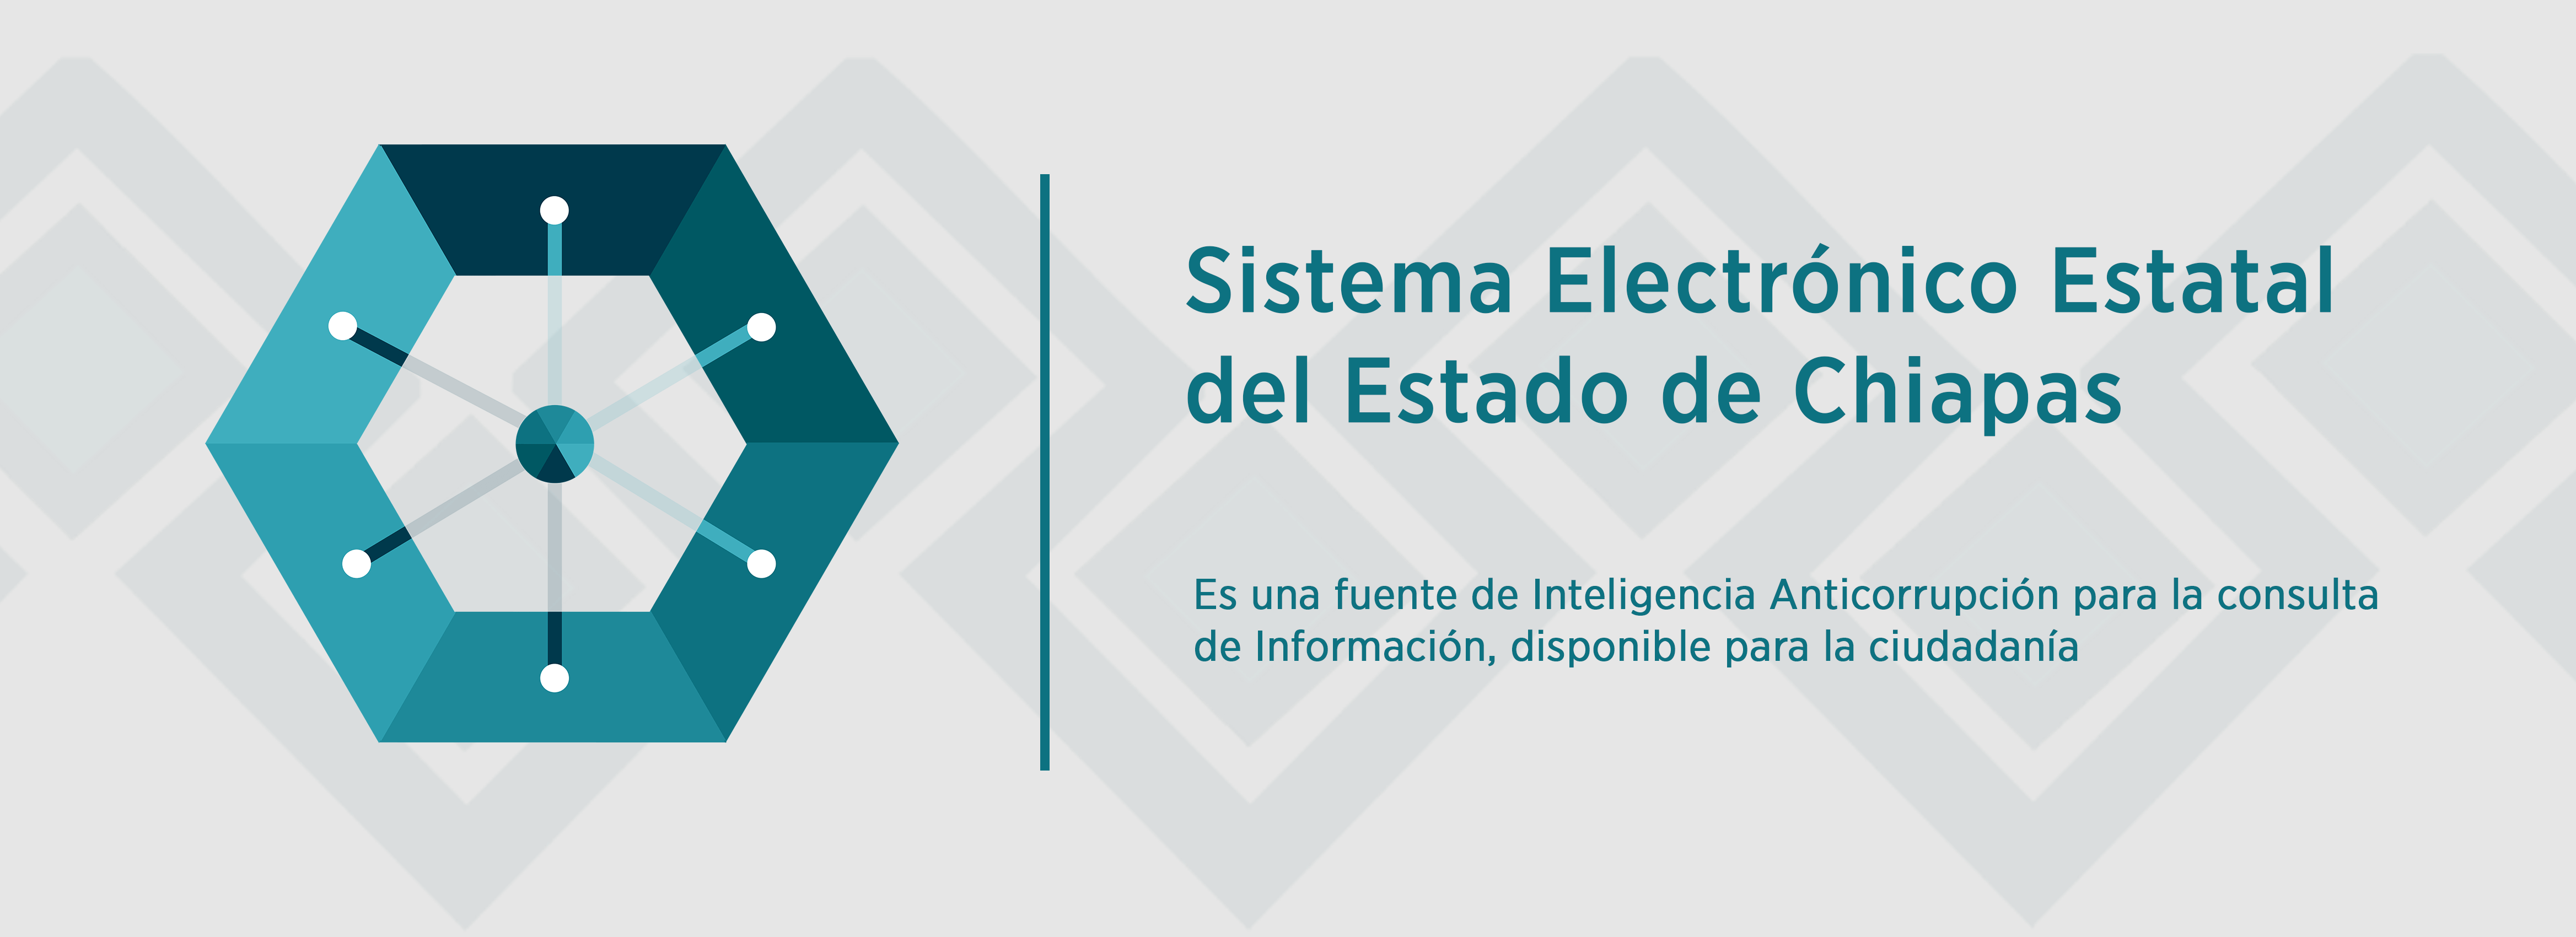 Sistema Electrónico Estatal de Chiapas